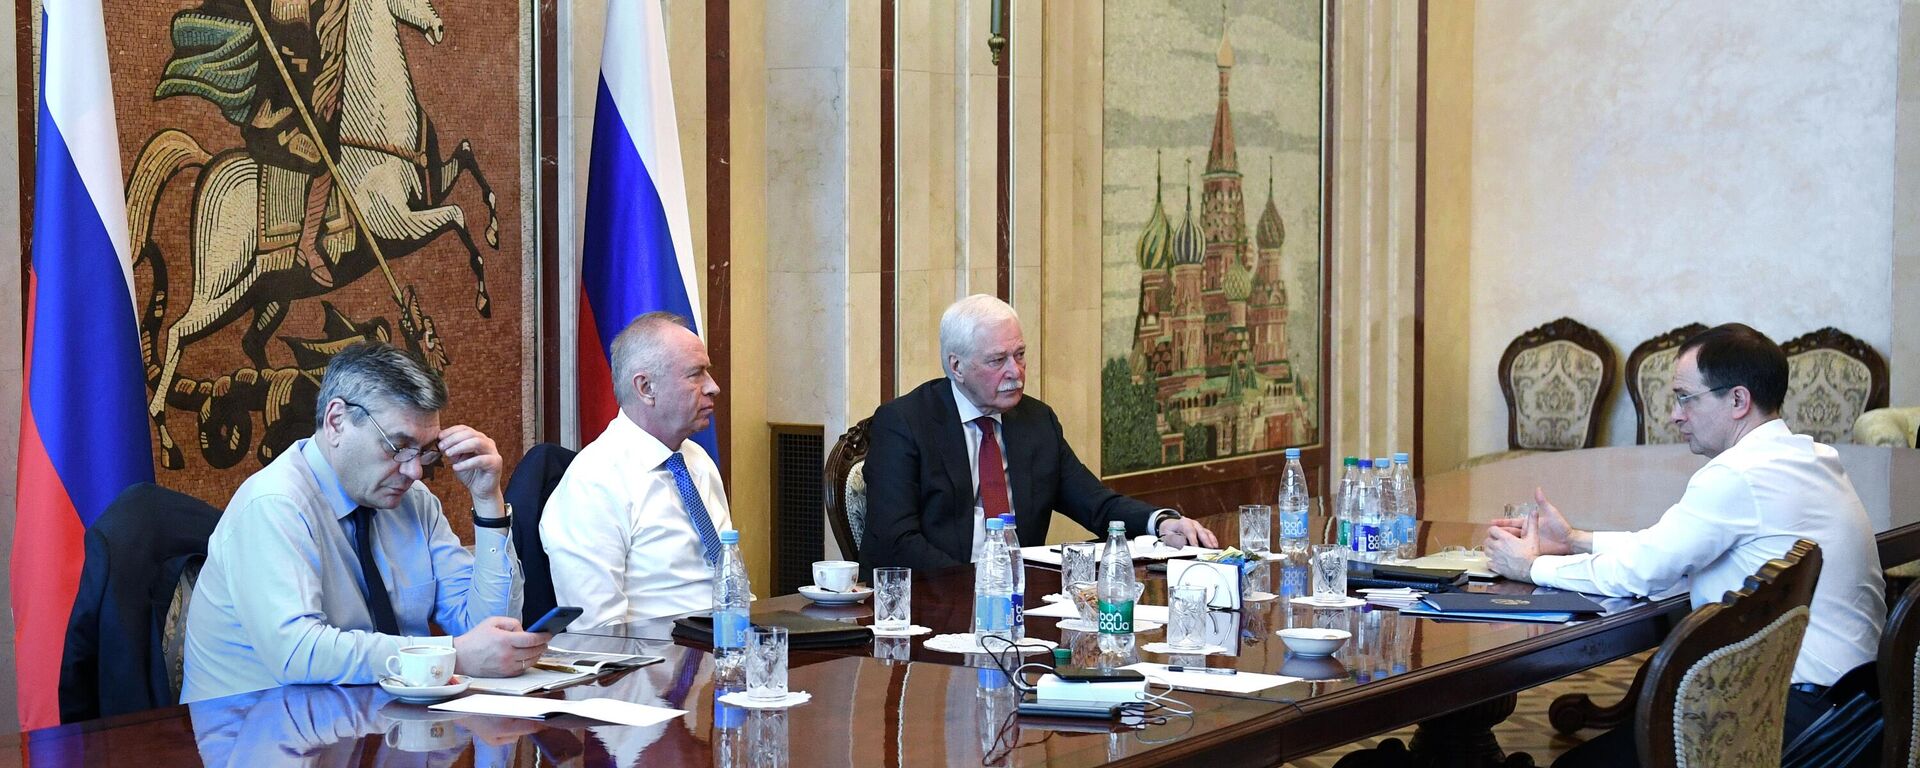 Delegação russa aguarda representantes da Ucrânia para negociações em Gomel, Belarus, 27 de fevereiro de 2022 - Sputnik Brasil, 1920, 27.02.2022